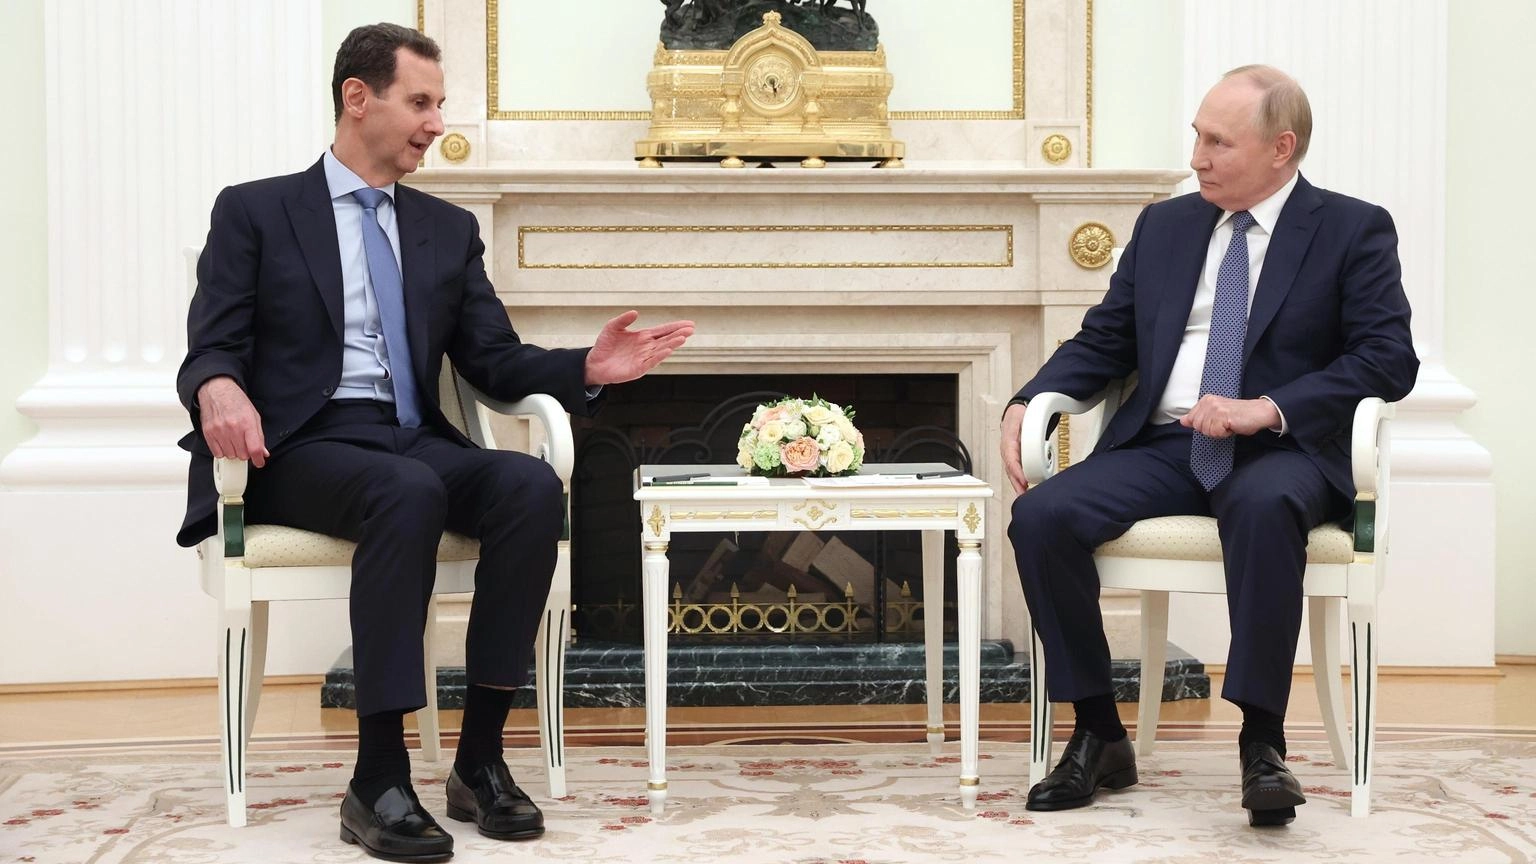 Putin incontra Assad, situazione in Medio Oriente peggiora